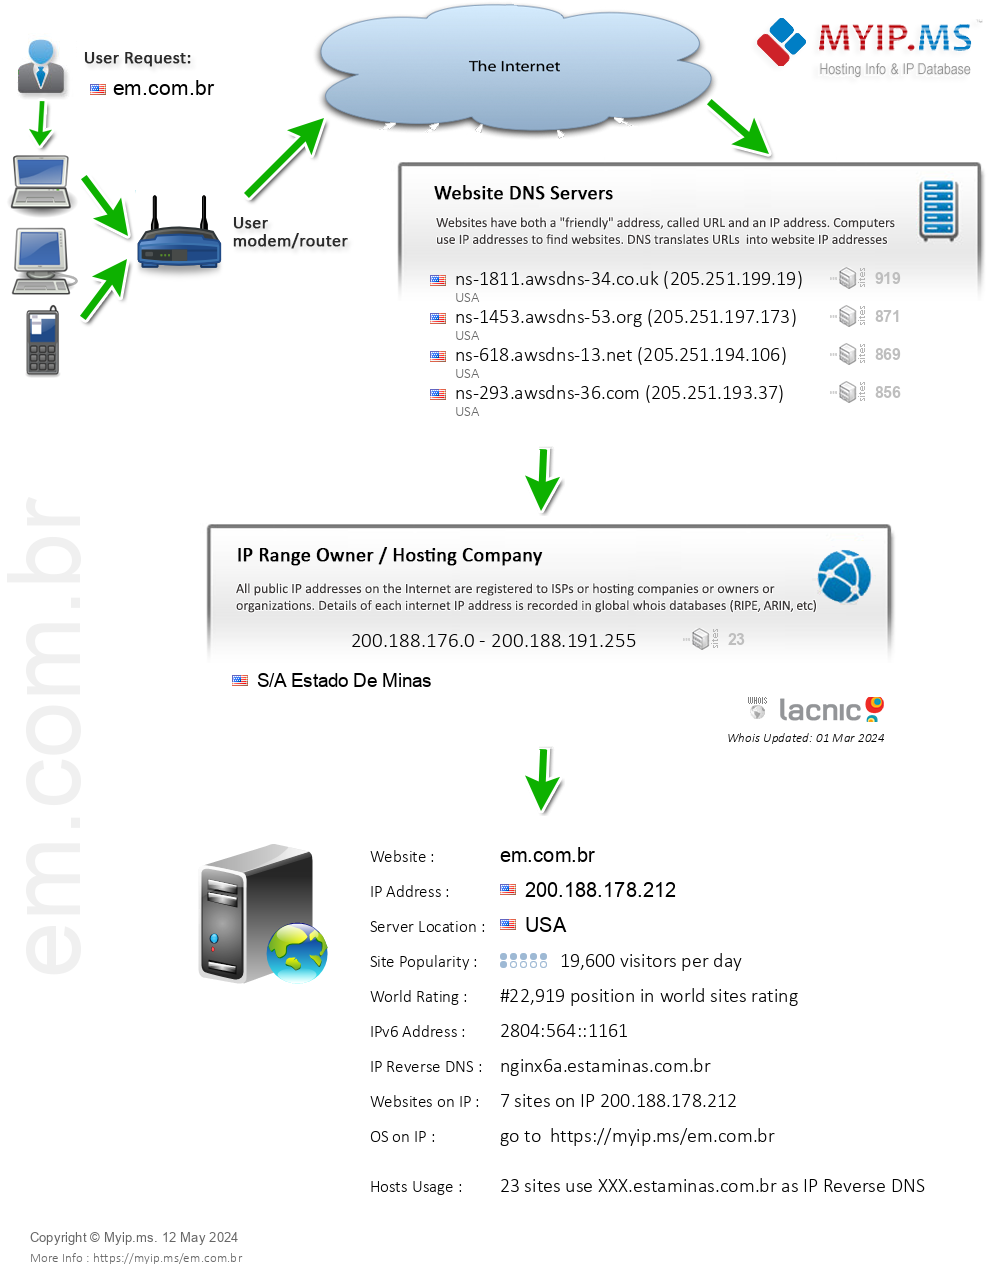 Em.com.br - Website Hosting Visual IP Diagram